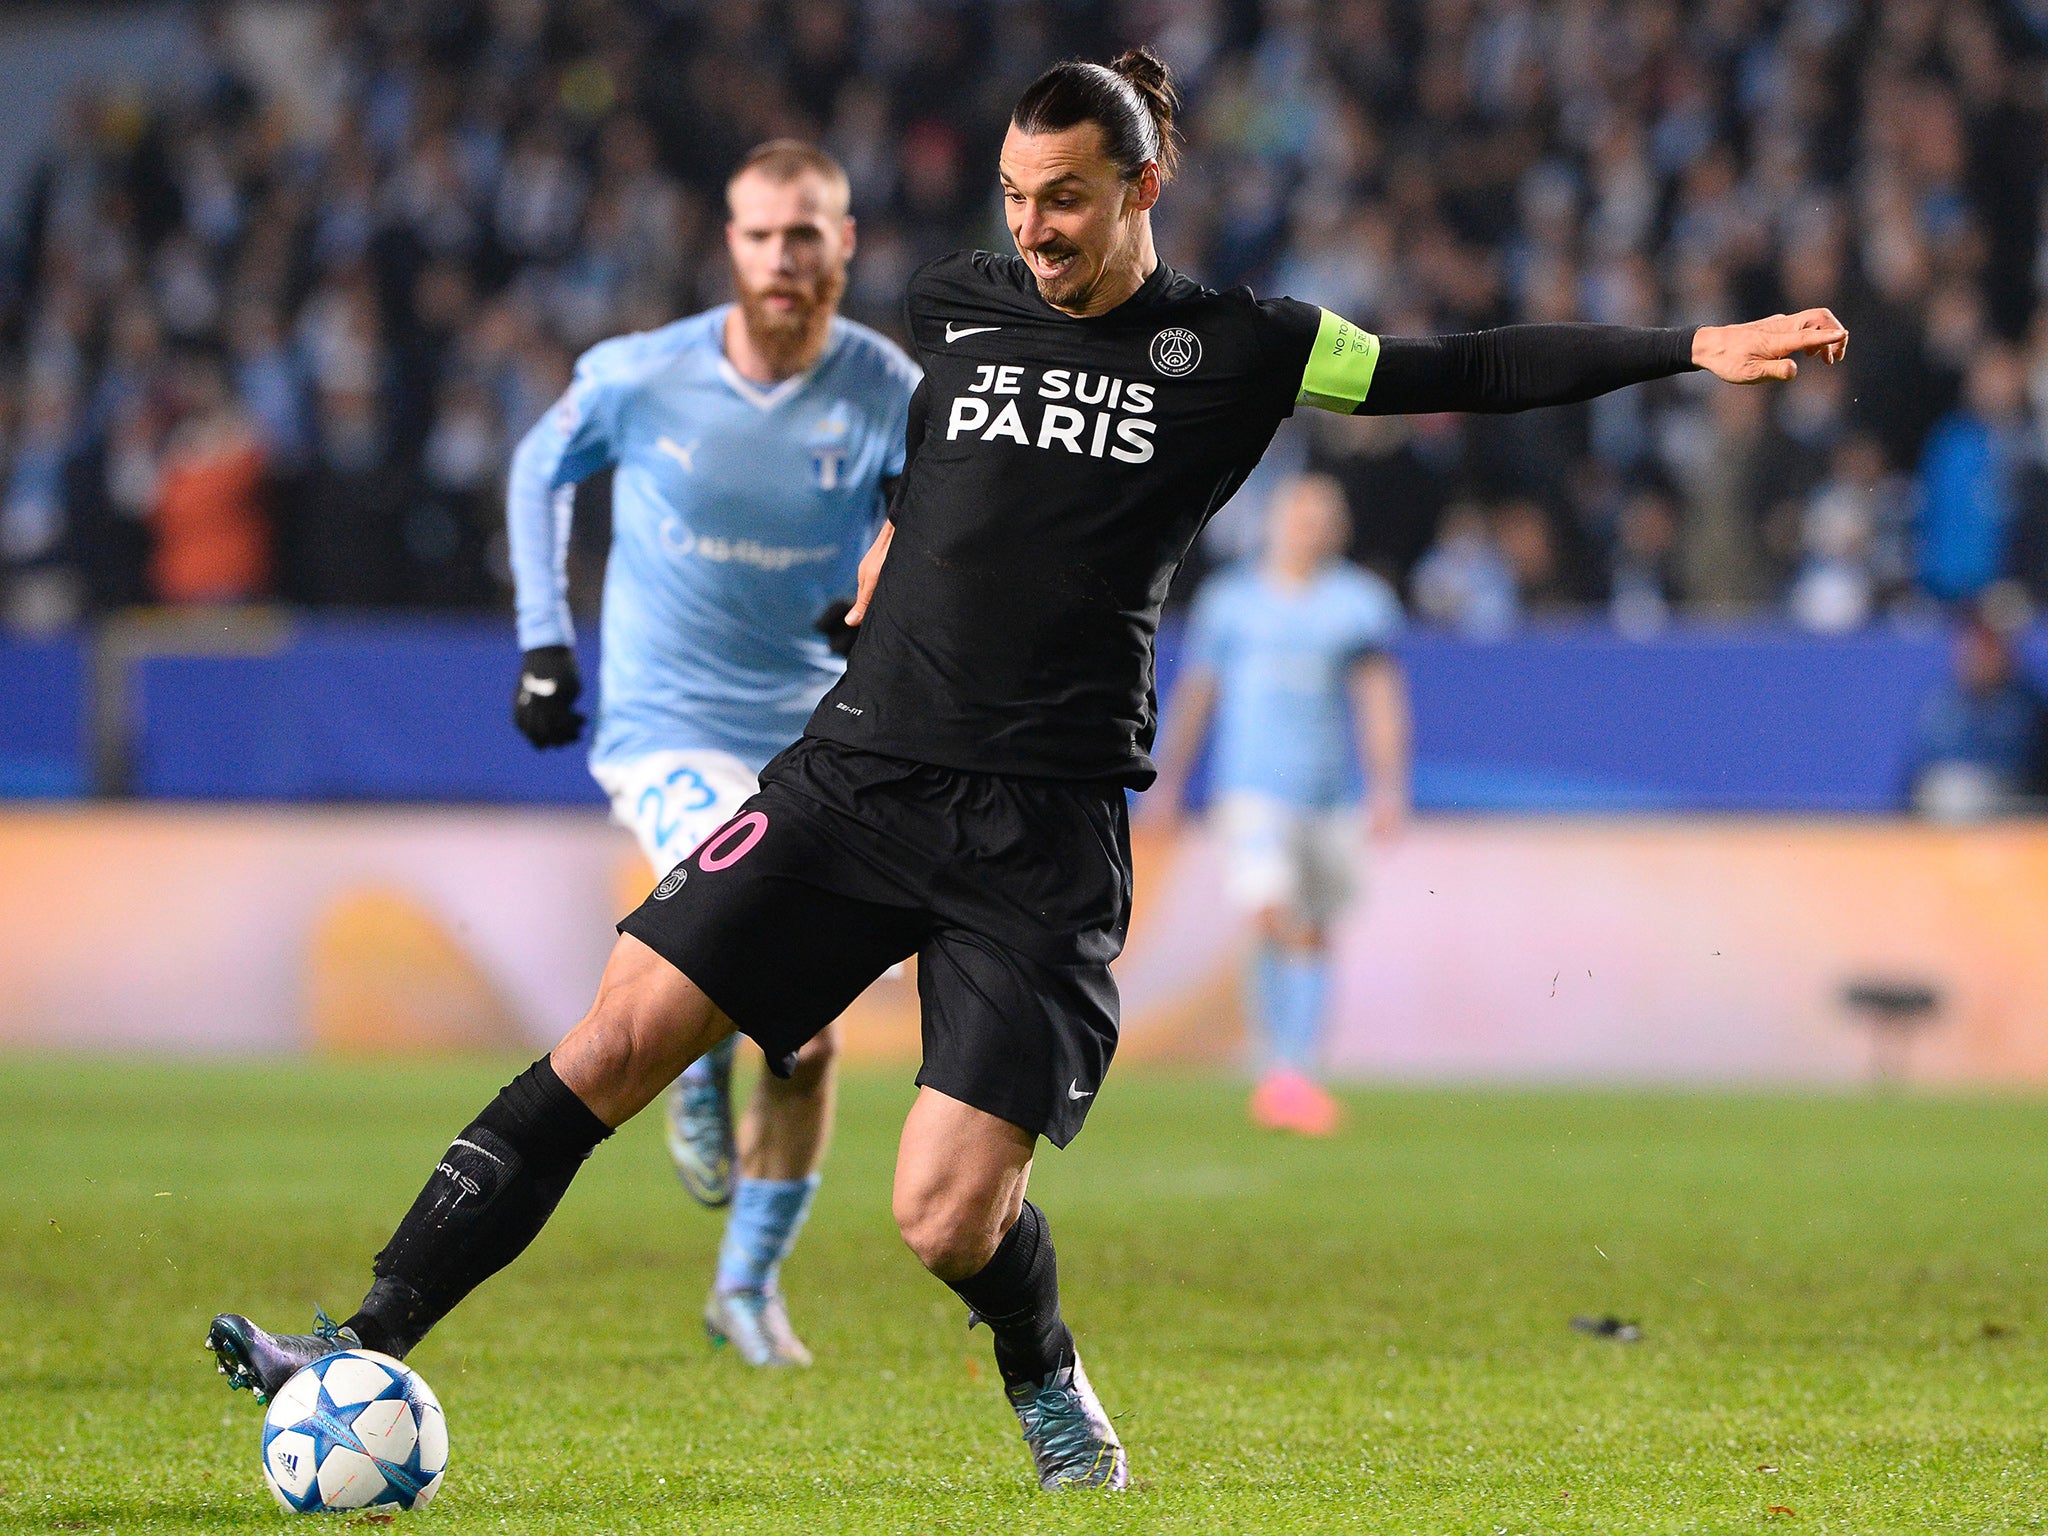 &#13;
Raiola hinted at a Milan return for PSG striker Zlatan Ibrahimovic&#13;